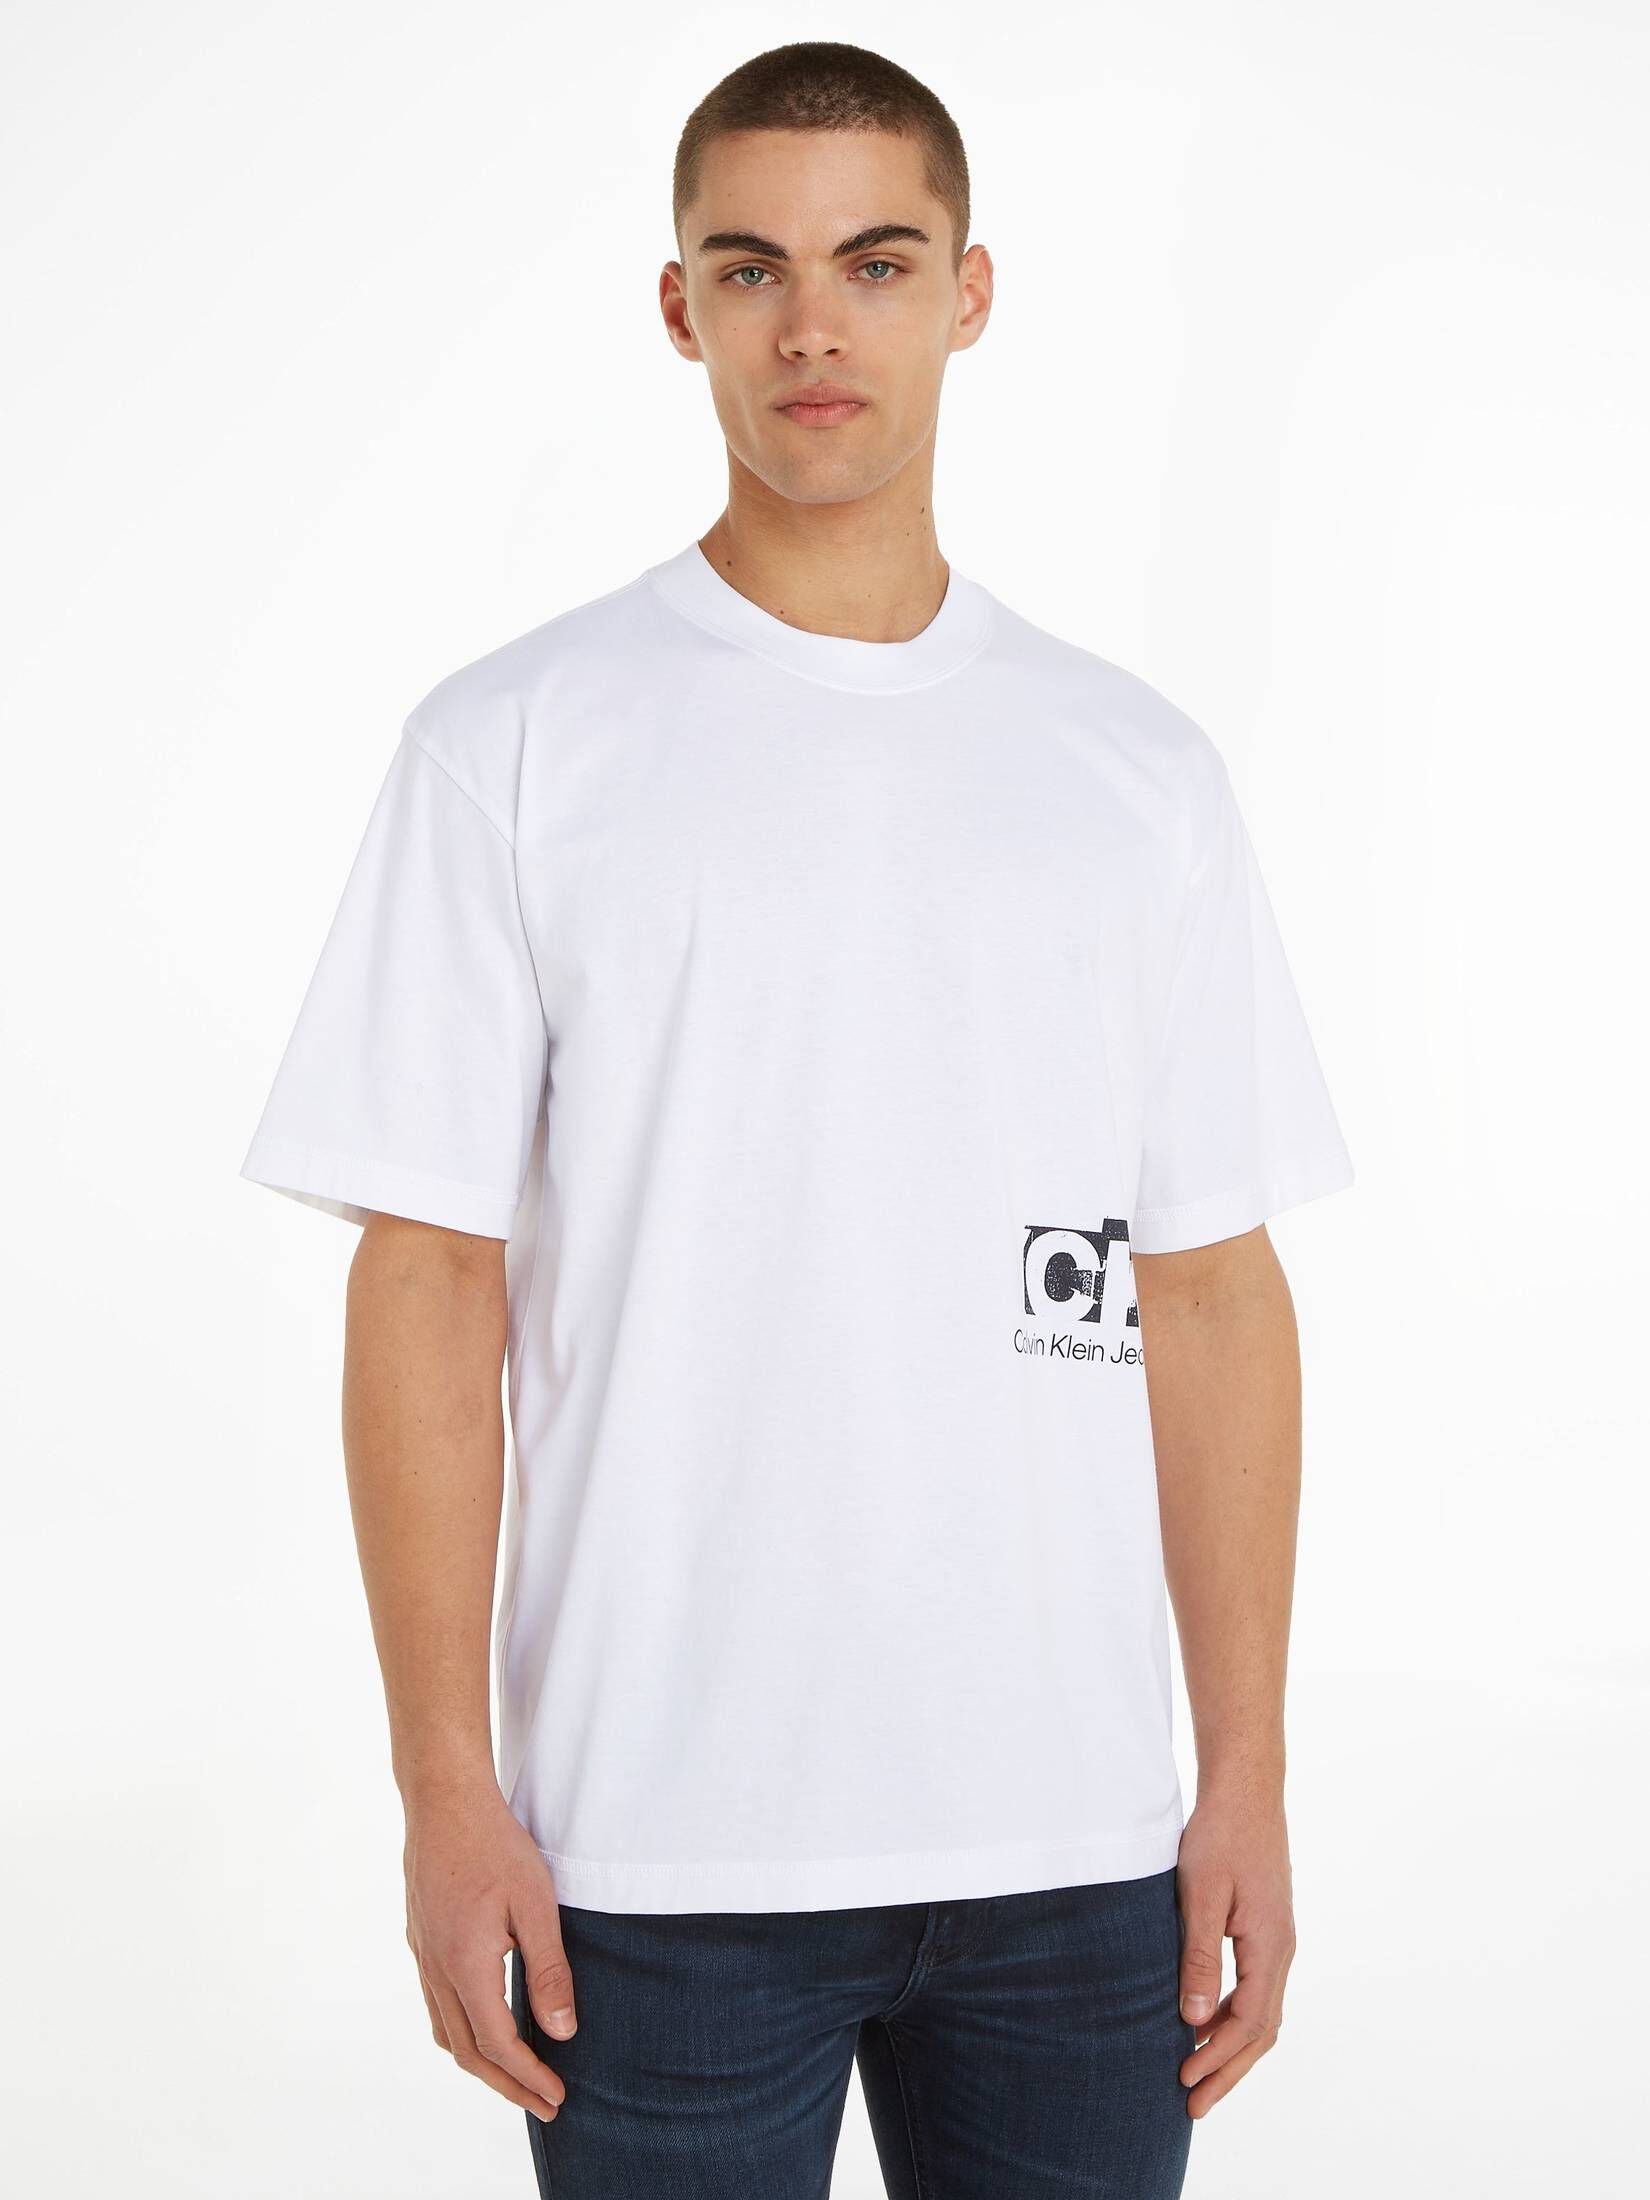 T-Shirt | mit LANDSCAPE Bio-Baumwolle engelhorn CONNECTED CALVIN KLEIN JEANS LAYER kaufen TEE Herren Fit Oversized